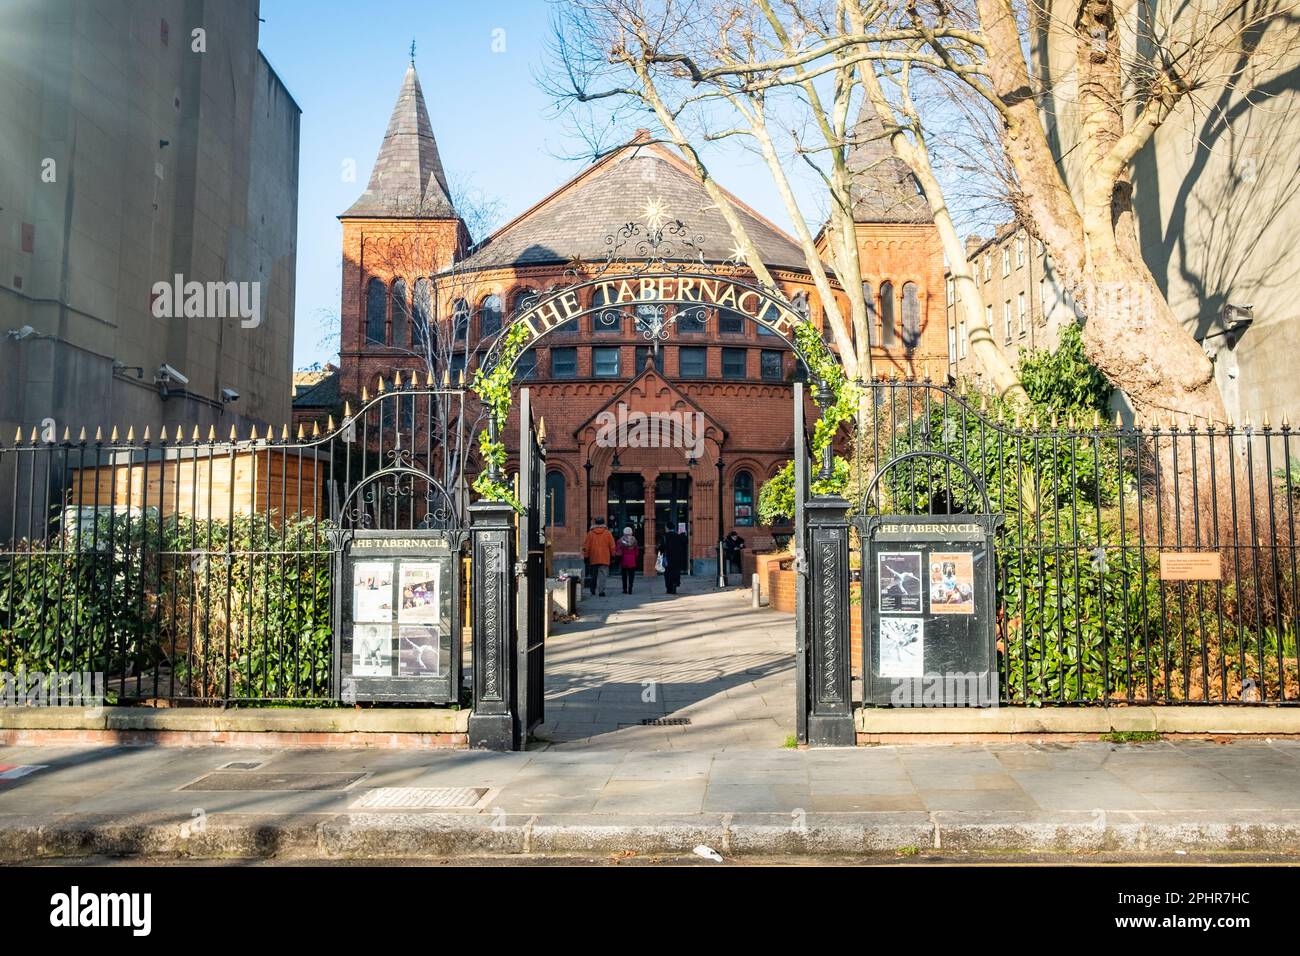 London - Januar 2023: Das Tabernakel in Notting Hill, West-London. Veranstaltungsort und Zentrum für darstellende Künste. Stockfoto